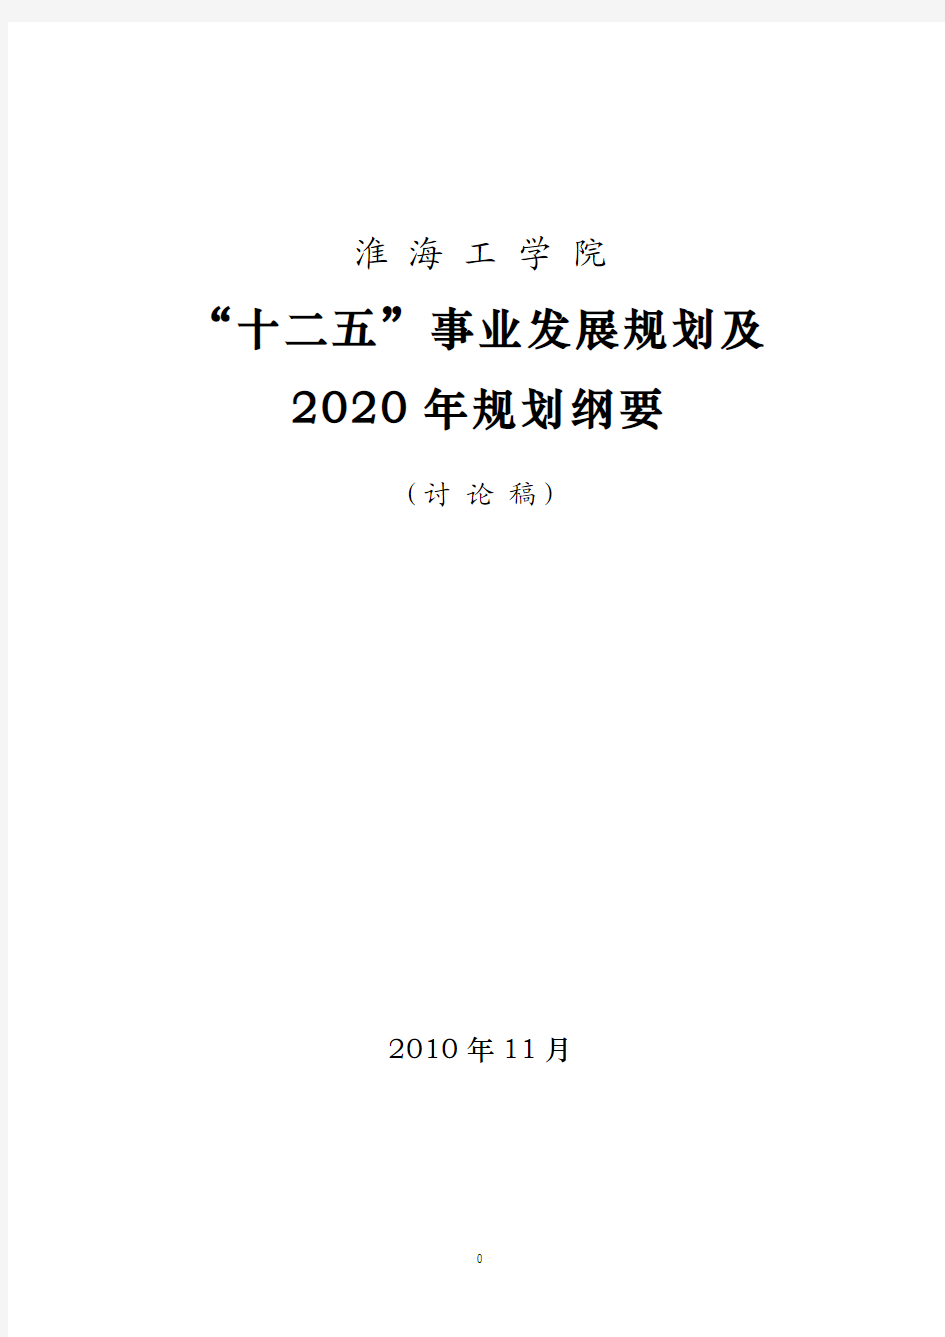 淮 海 工 学 院“十二五”事业发展规划及2020年规划纲要